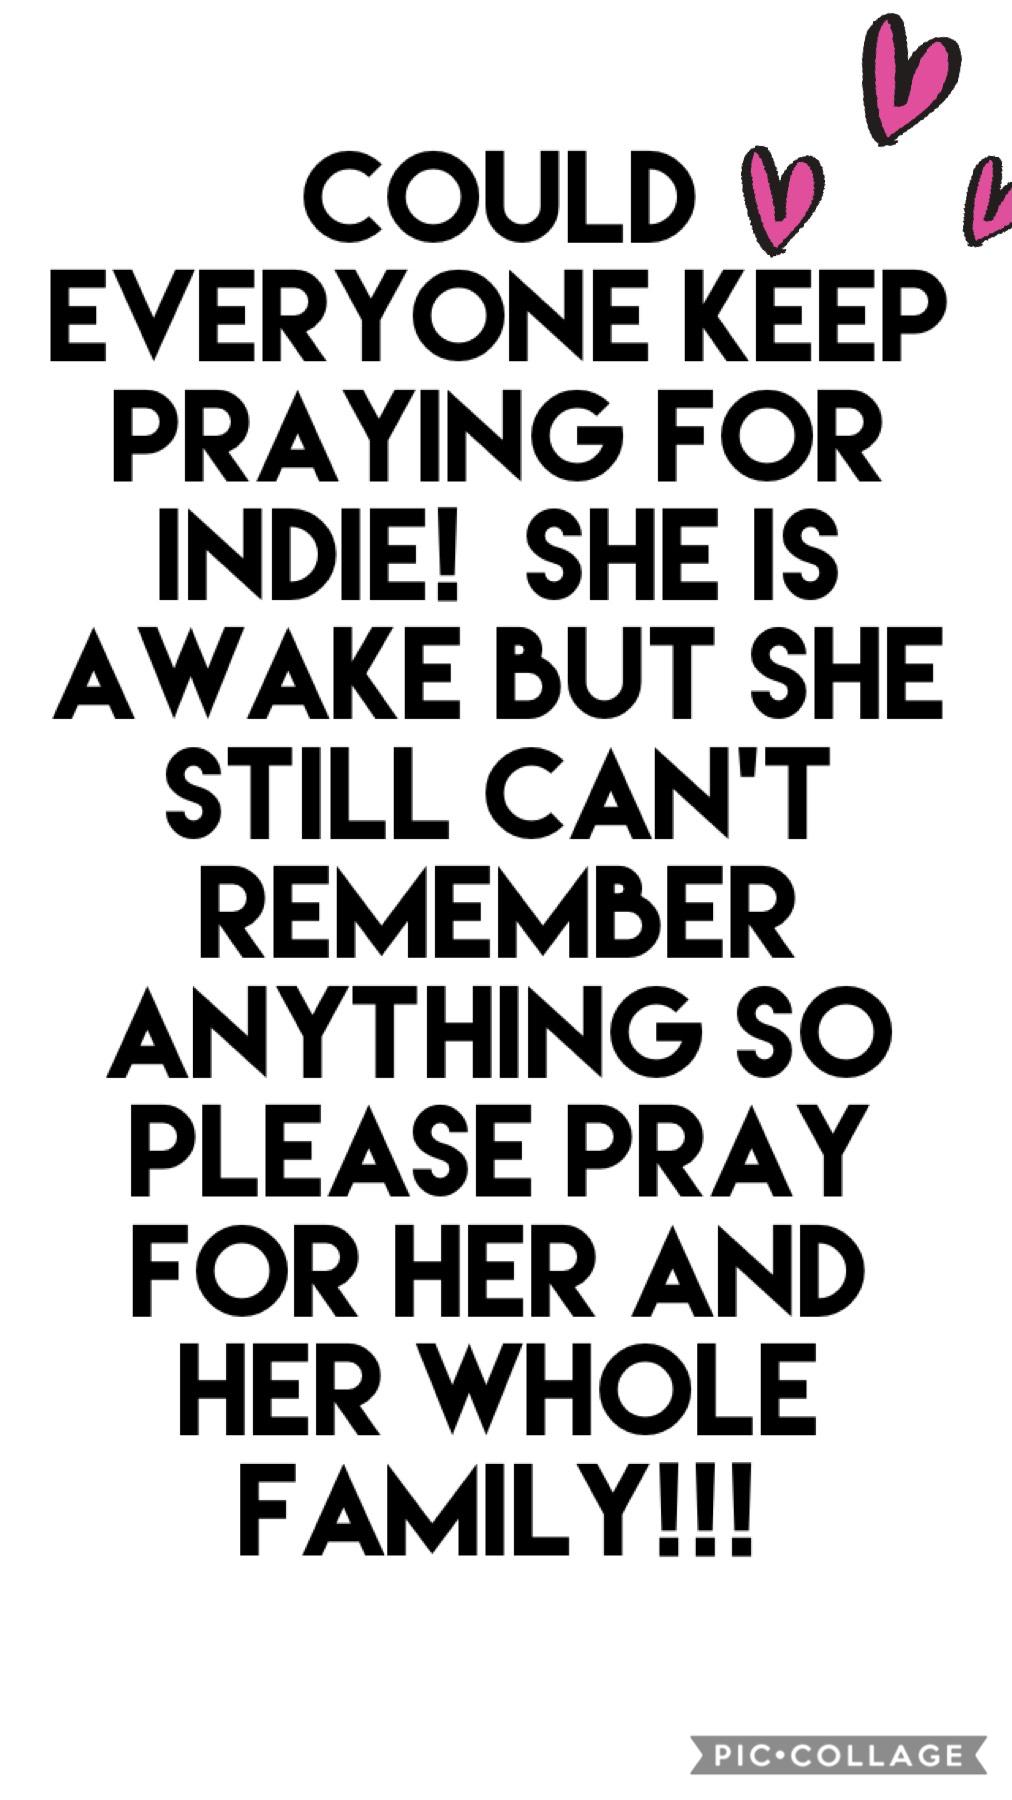 KEEP PRAYING!!!